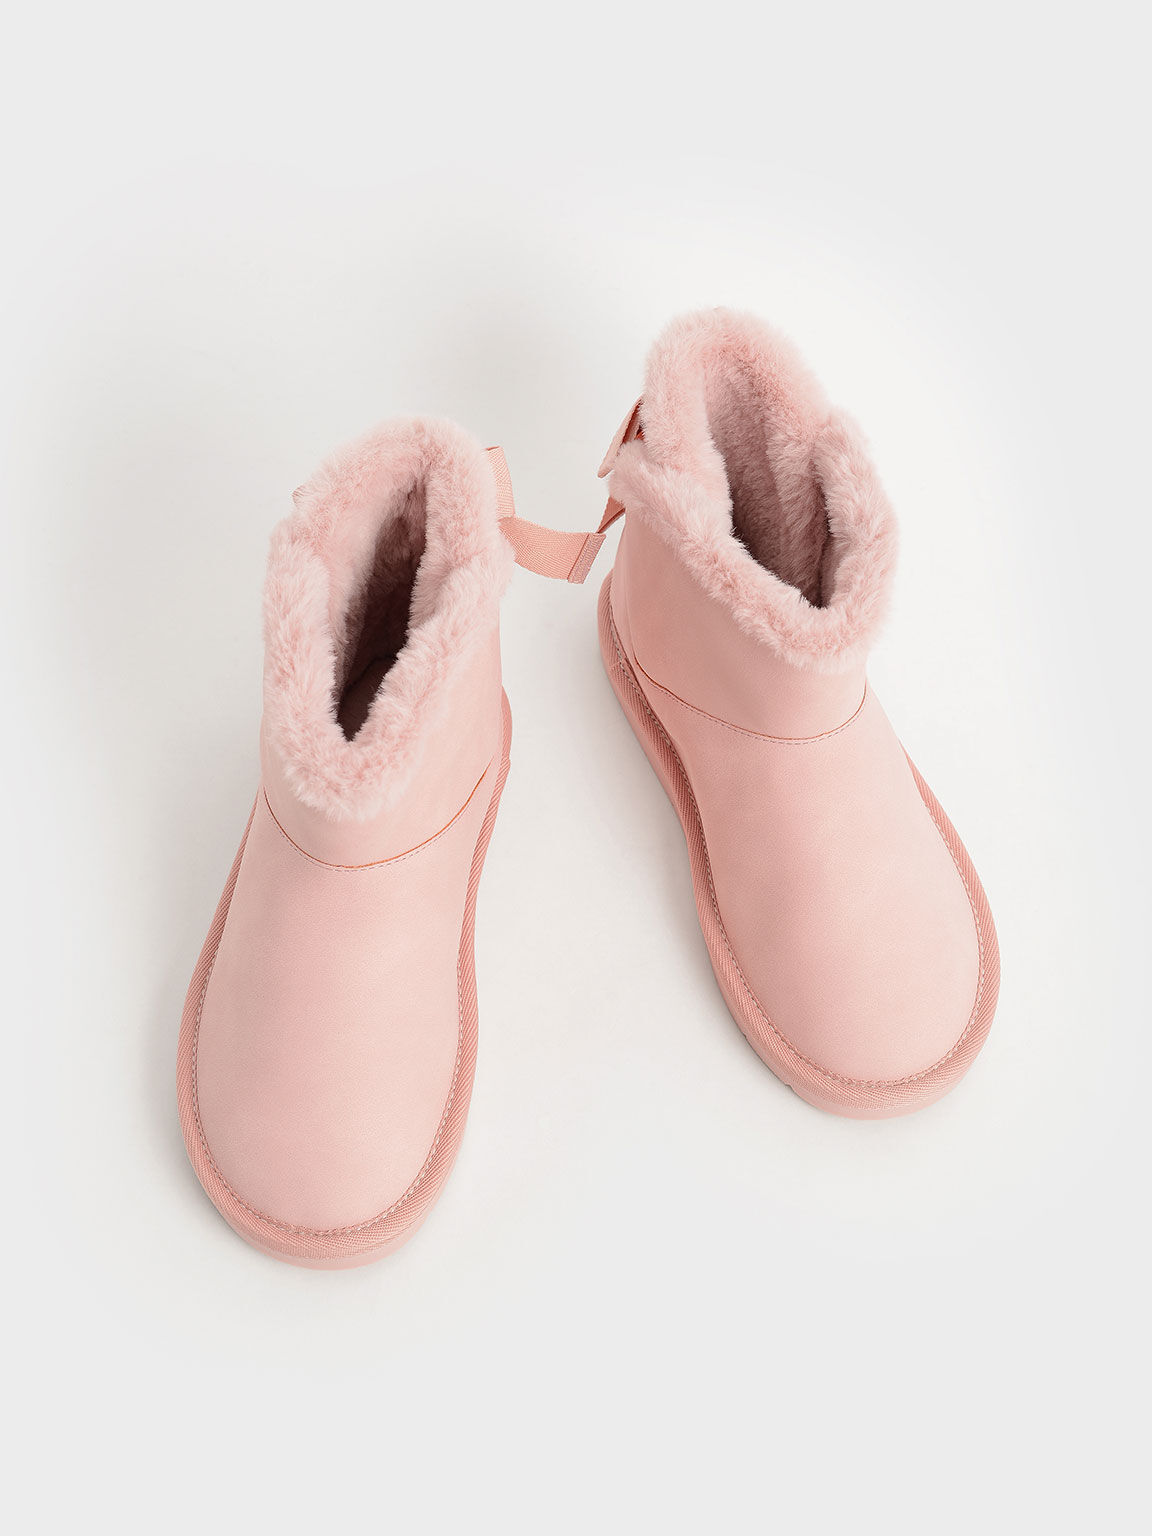 Girls' Fur-Trimmed Slip-On Ankle Boots, Blush, hi-res